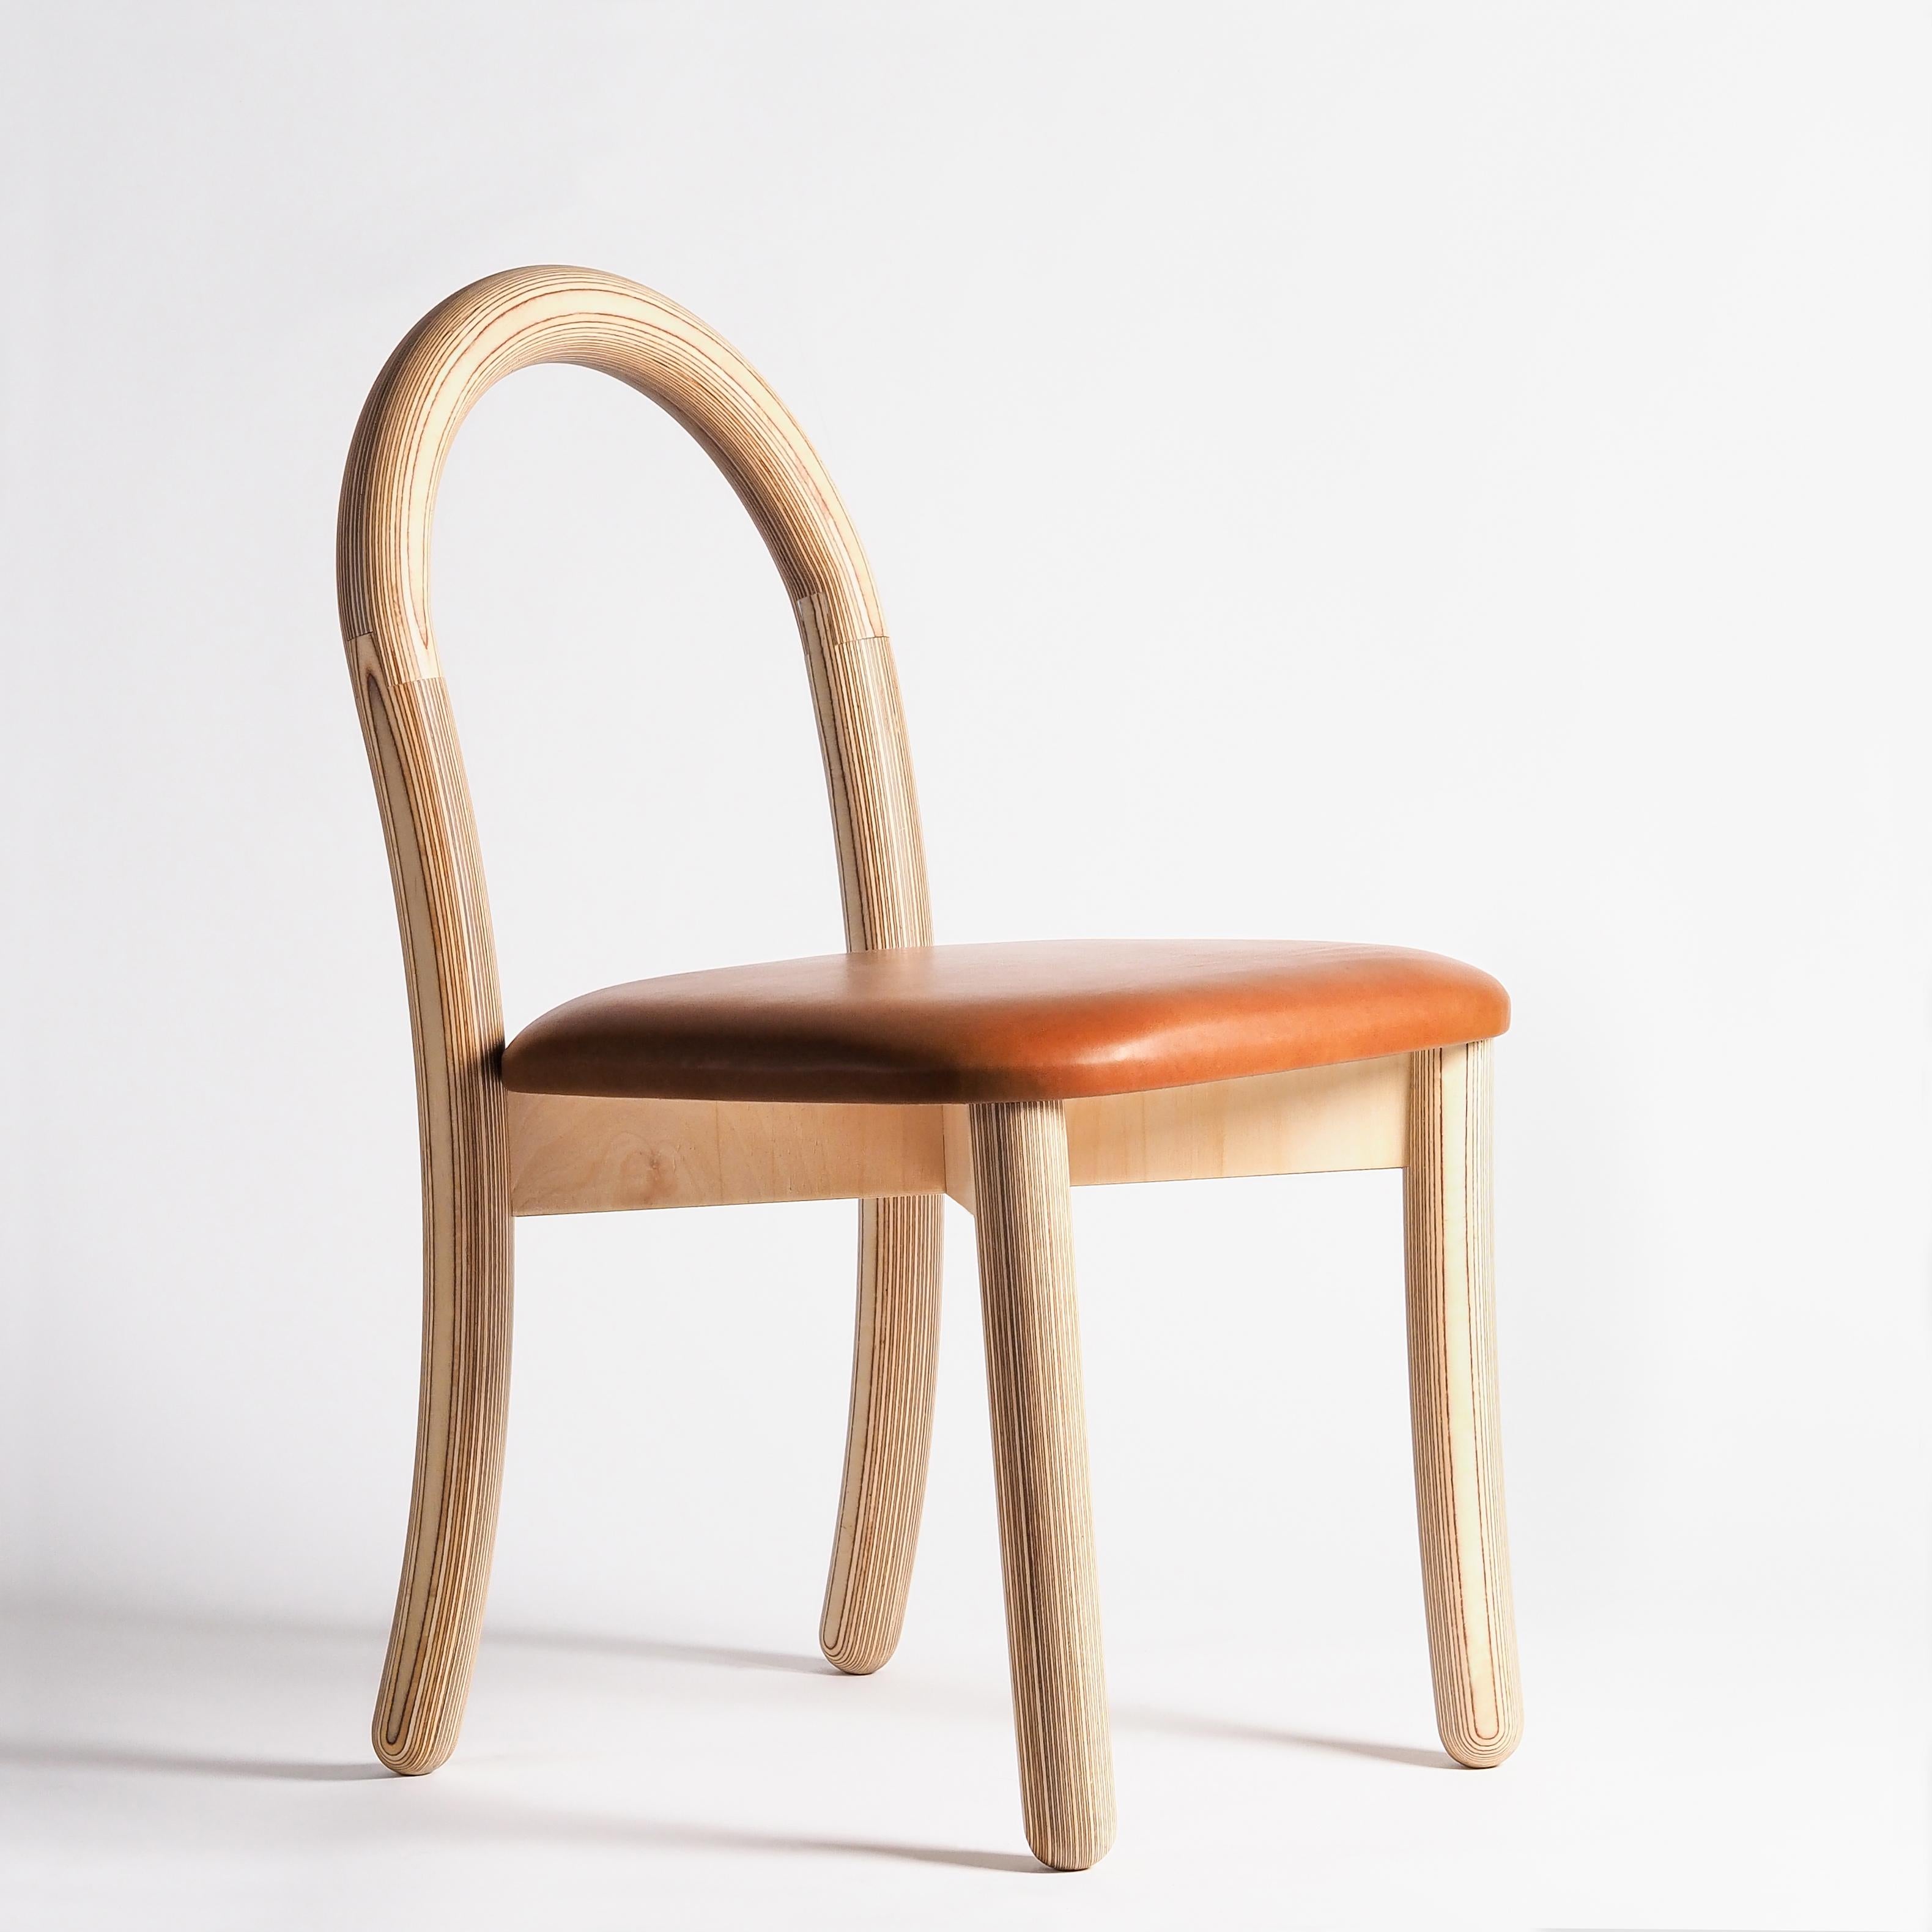 Ensemble de 4 chaises de salle à manger Goma par Made by Choice
Dimensions : 59 x 55 x 80 cm : 59 x 55 x 80 cm
Matériaux : Contreplaqué

Également disponible : Rembourrage en tissu ou en cuir (catégorie 1 et 3), chaise de bar Goma et fauteuil